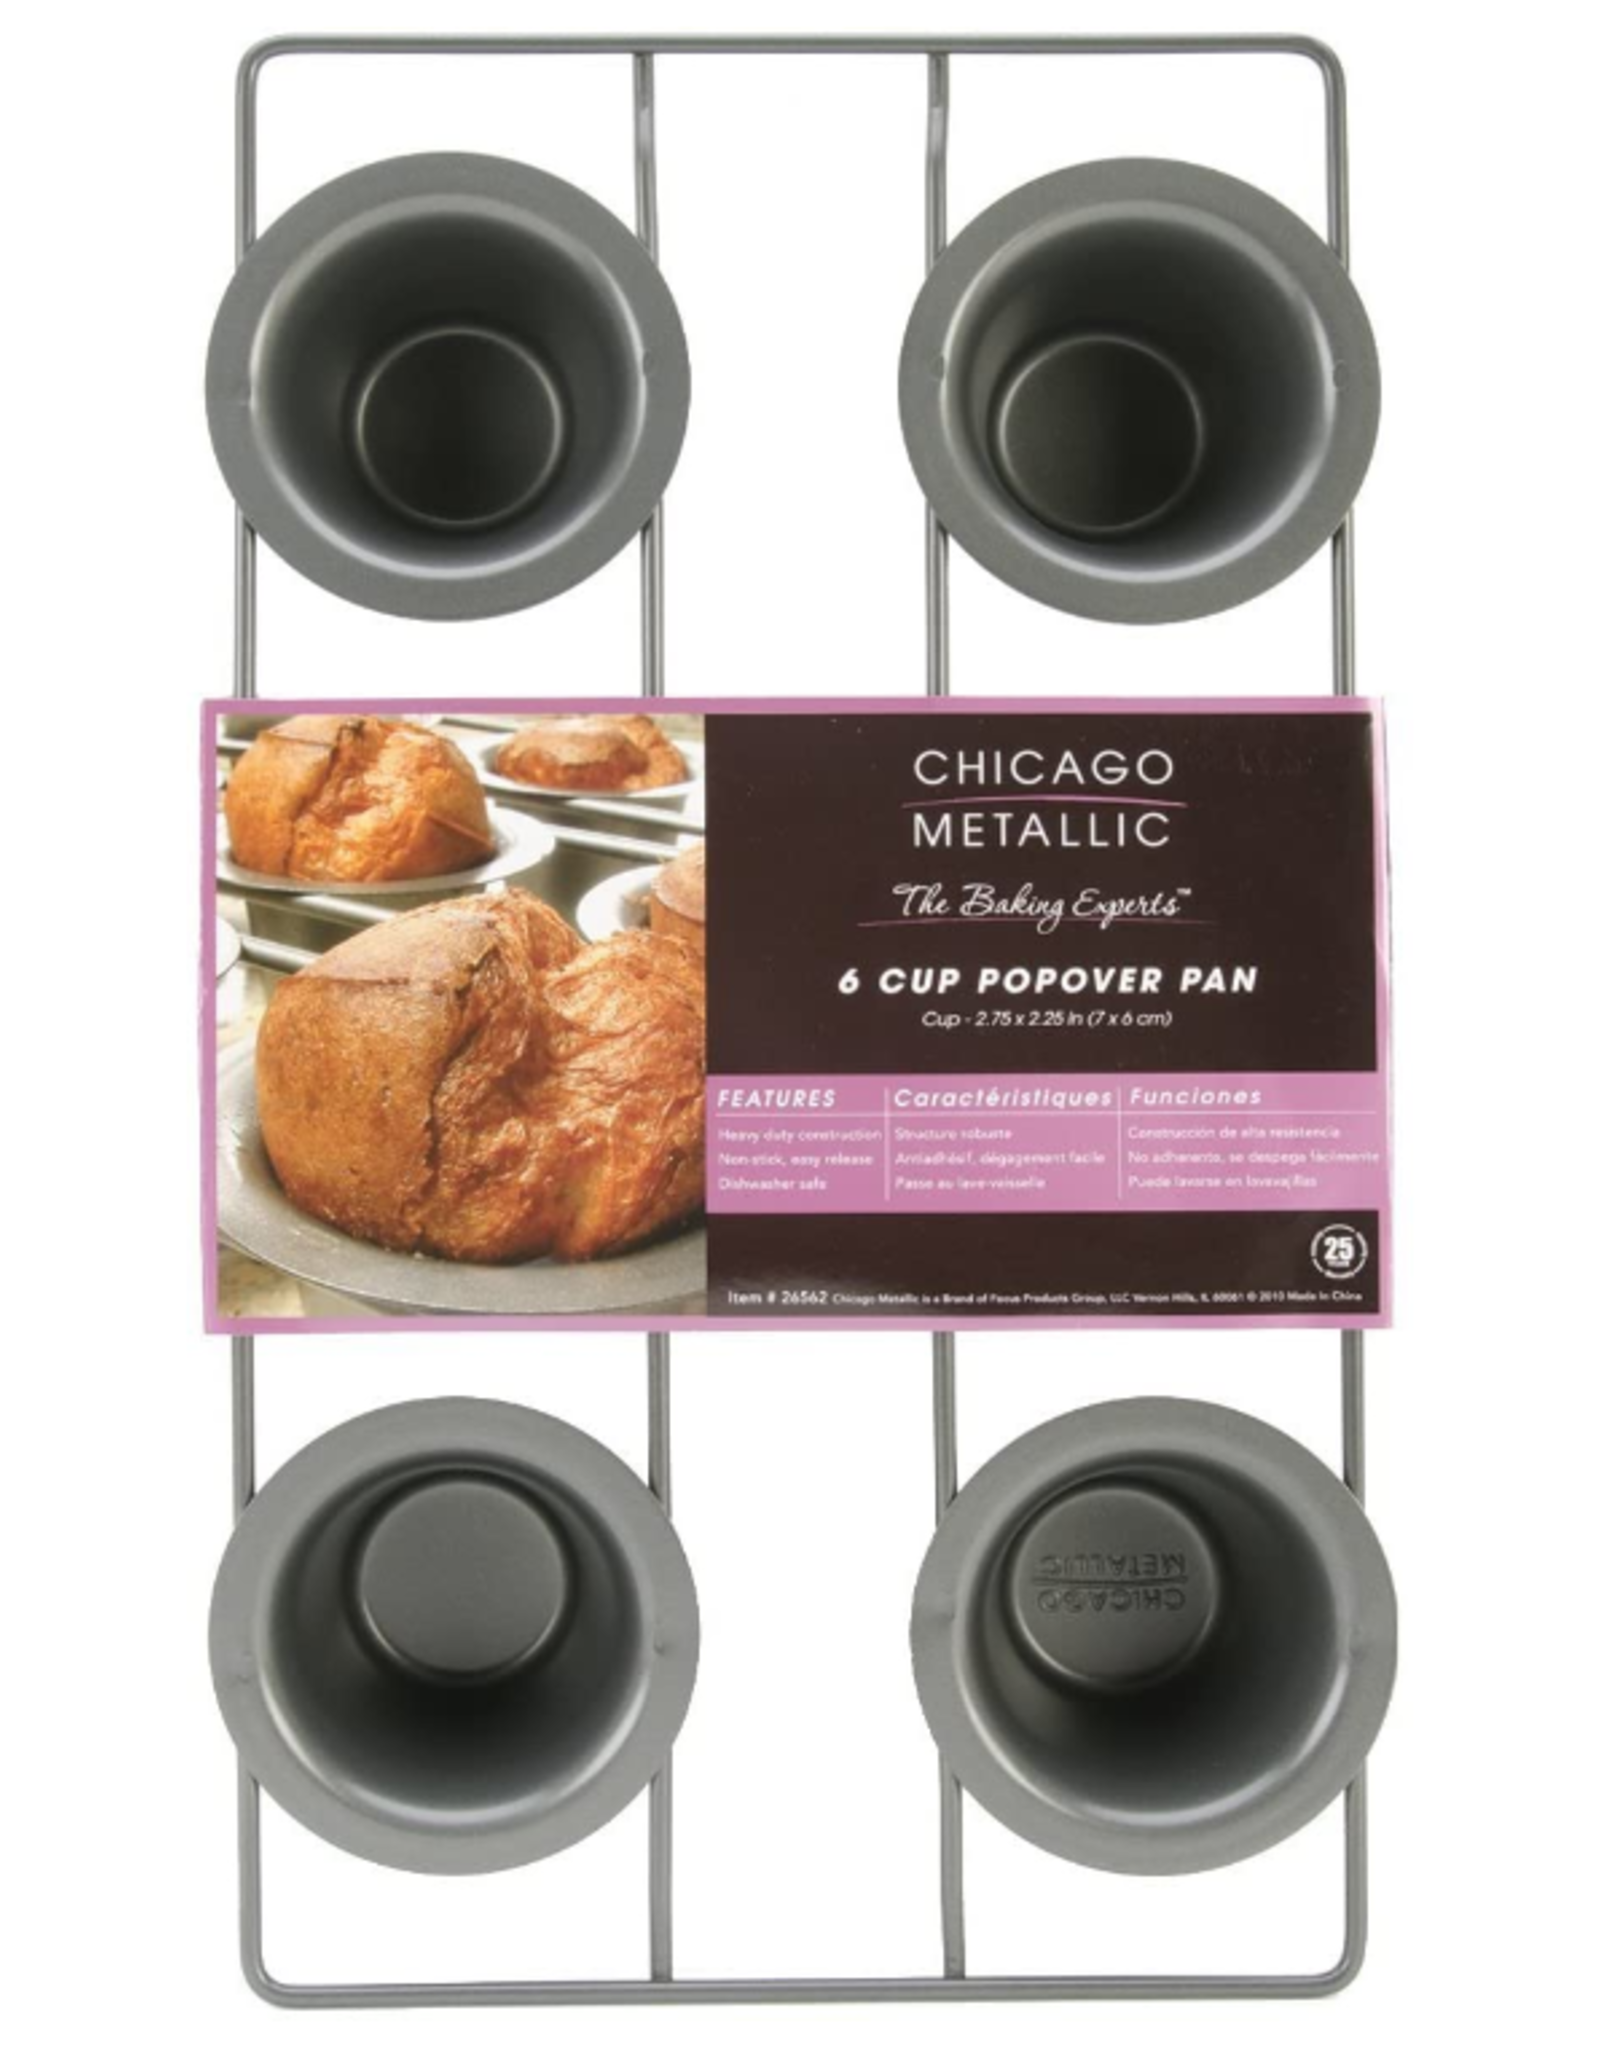 Chicago Metallic ChicMet 6 Cup Popover Pan